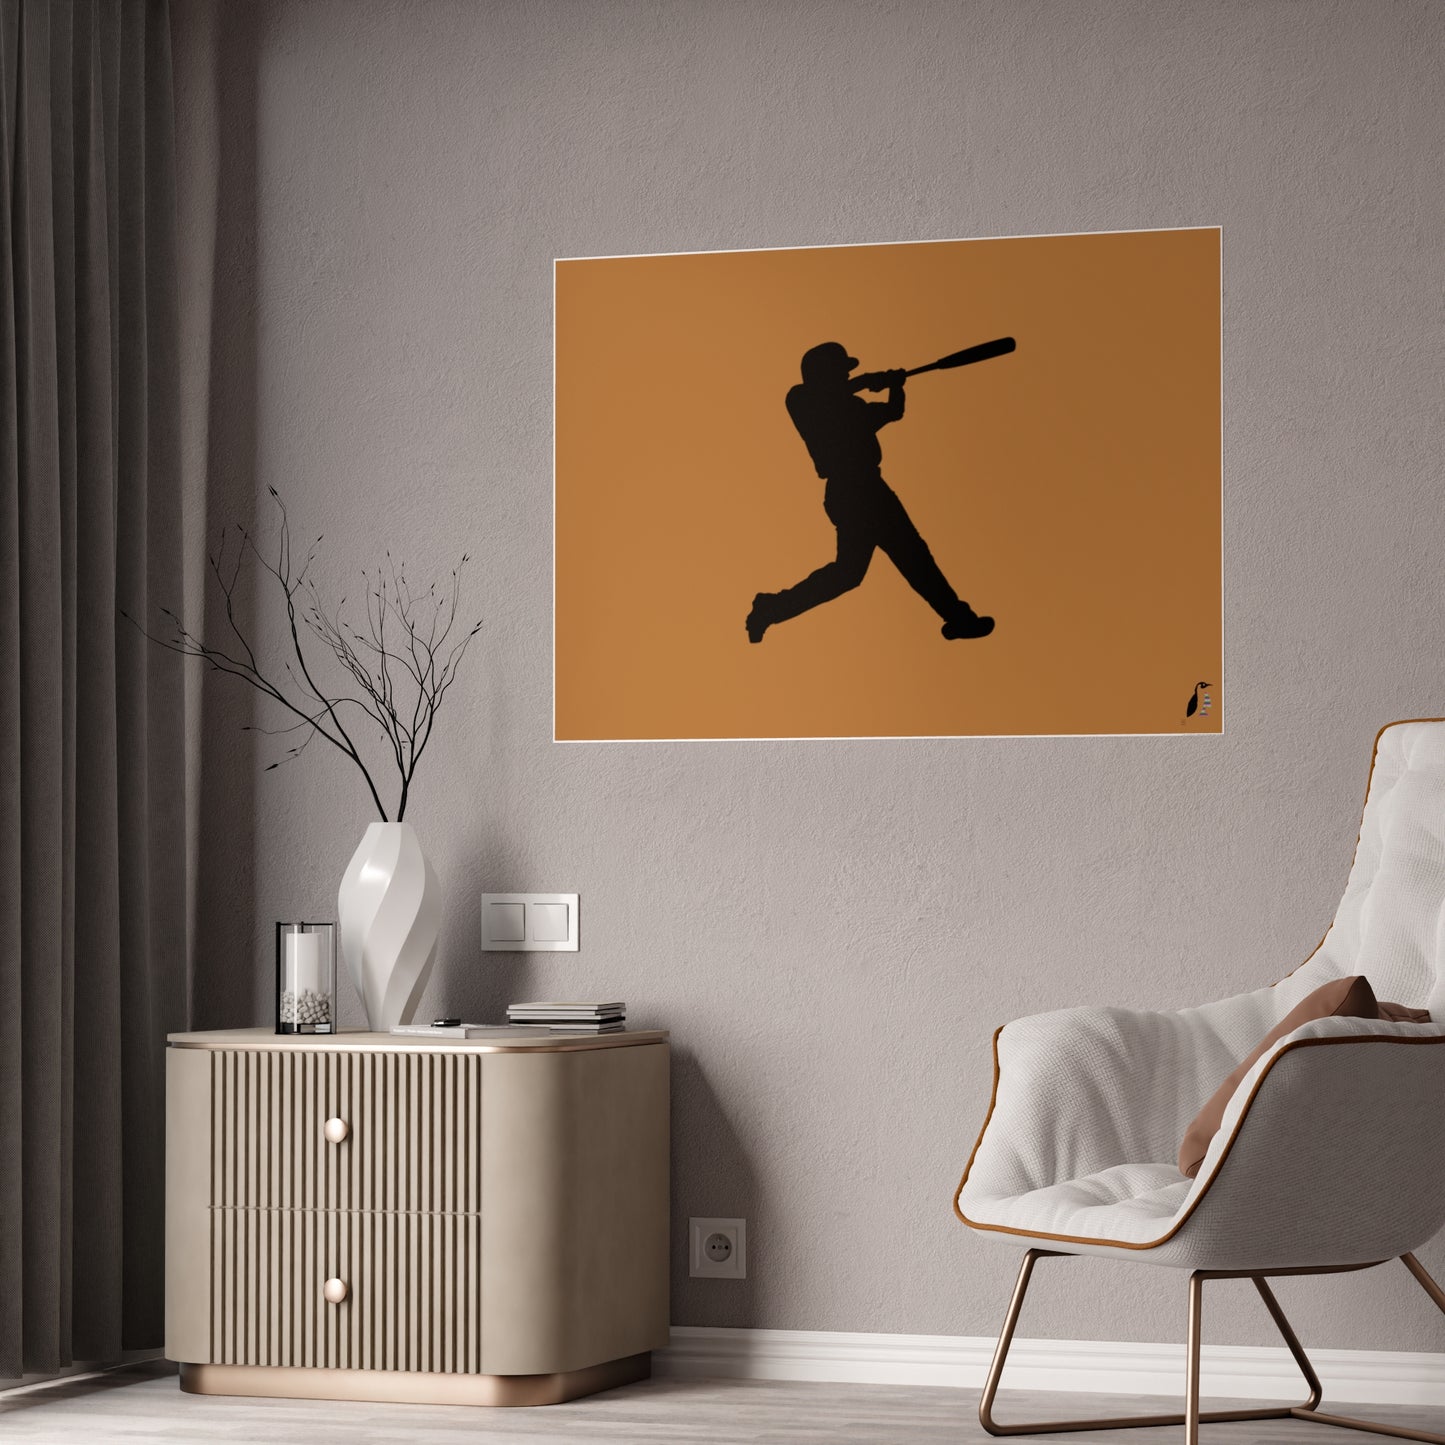 Gloss Posters: Baseball Lite Brown